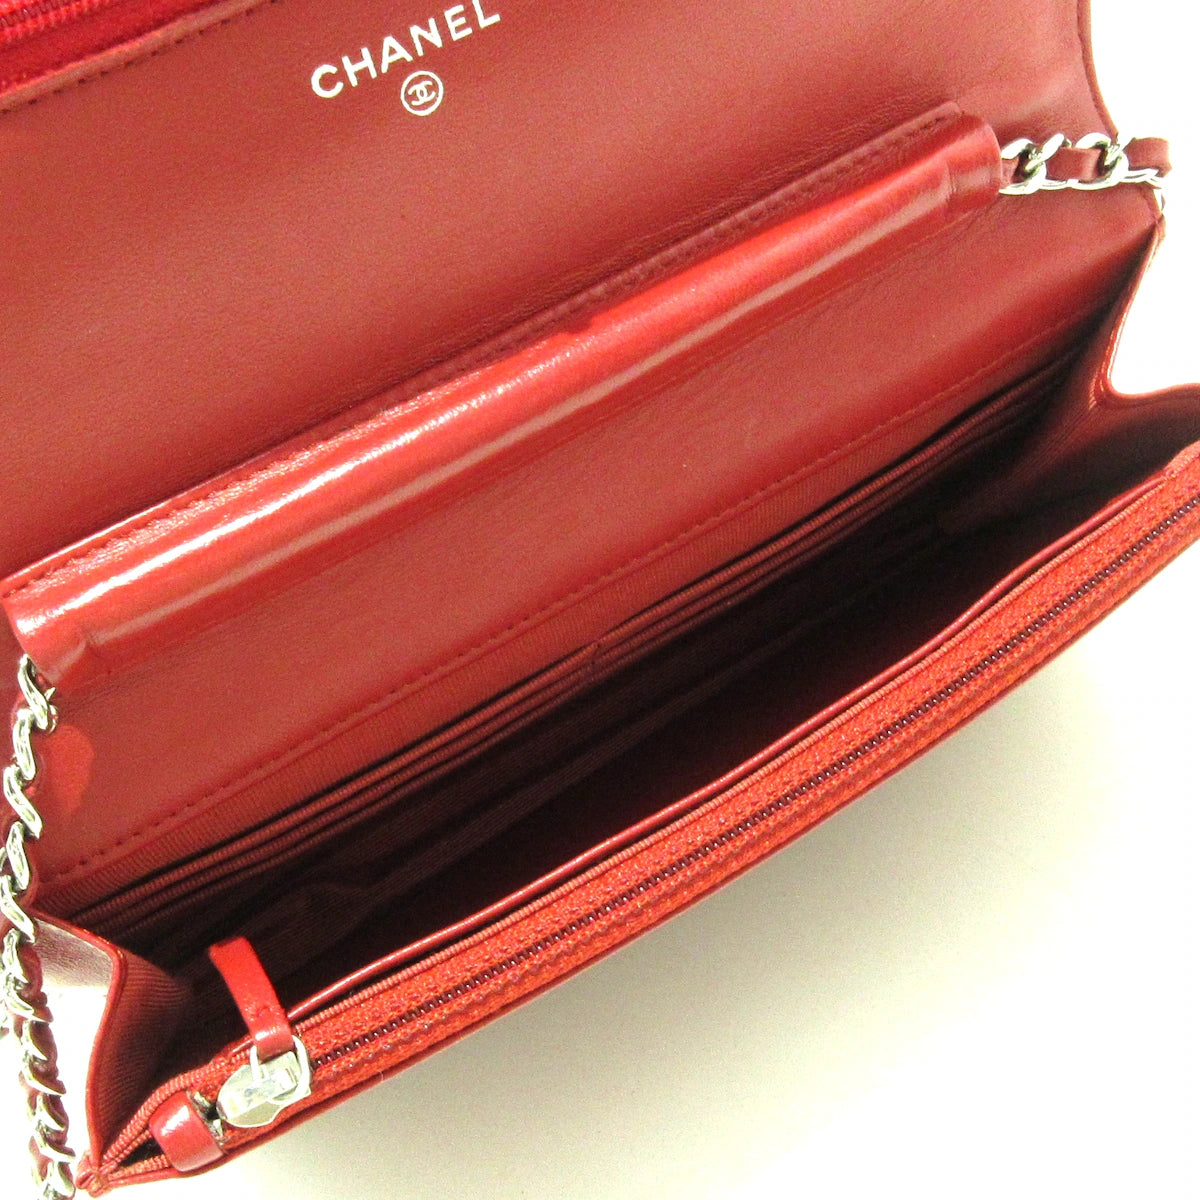 CHANEL - Matelasse Wallet on Chain Red Lambskin